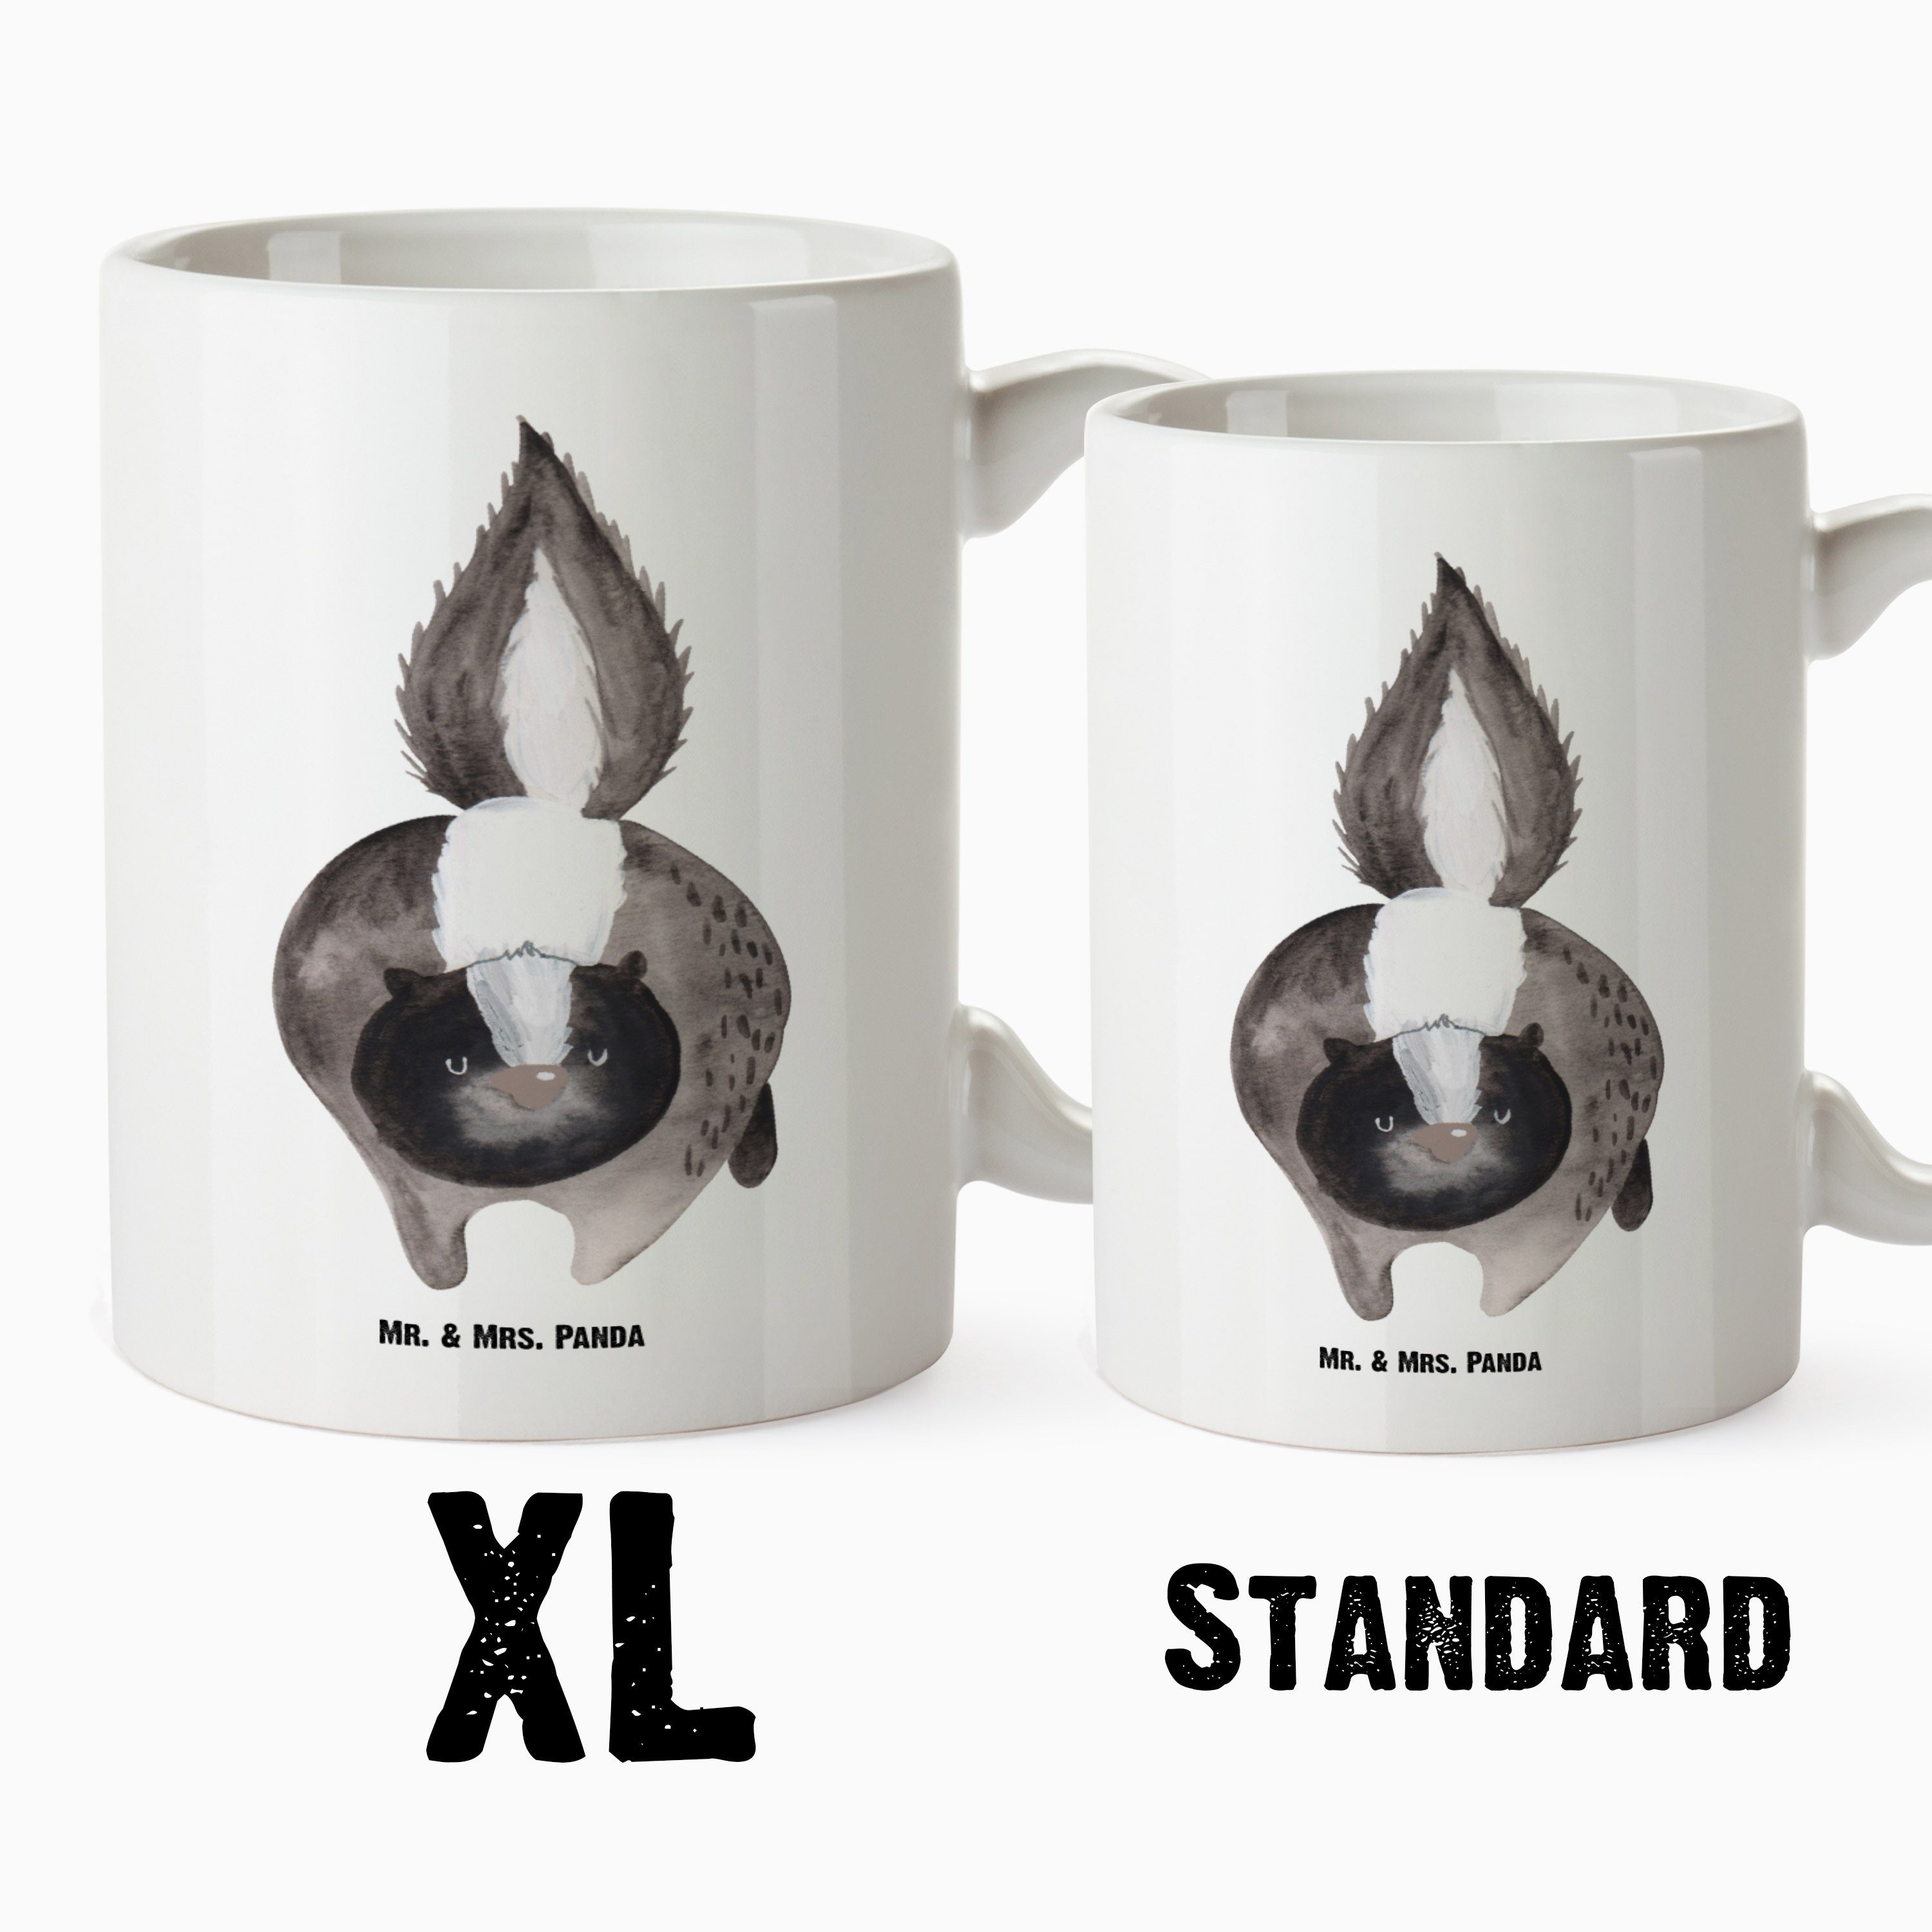 Mr. & Mrs. Panda Tasse Tasse XL - XL Geschenk, Tasse, - Weiß XL Angriff Stinki, Keramik B, Stinktier Raubtier